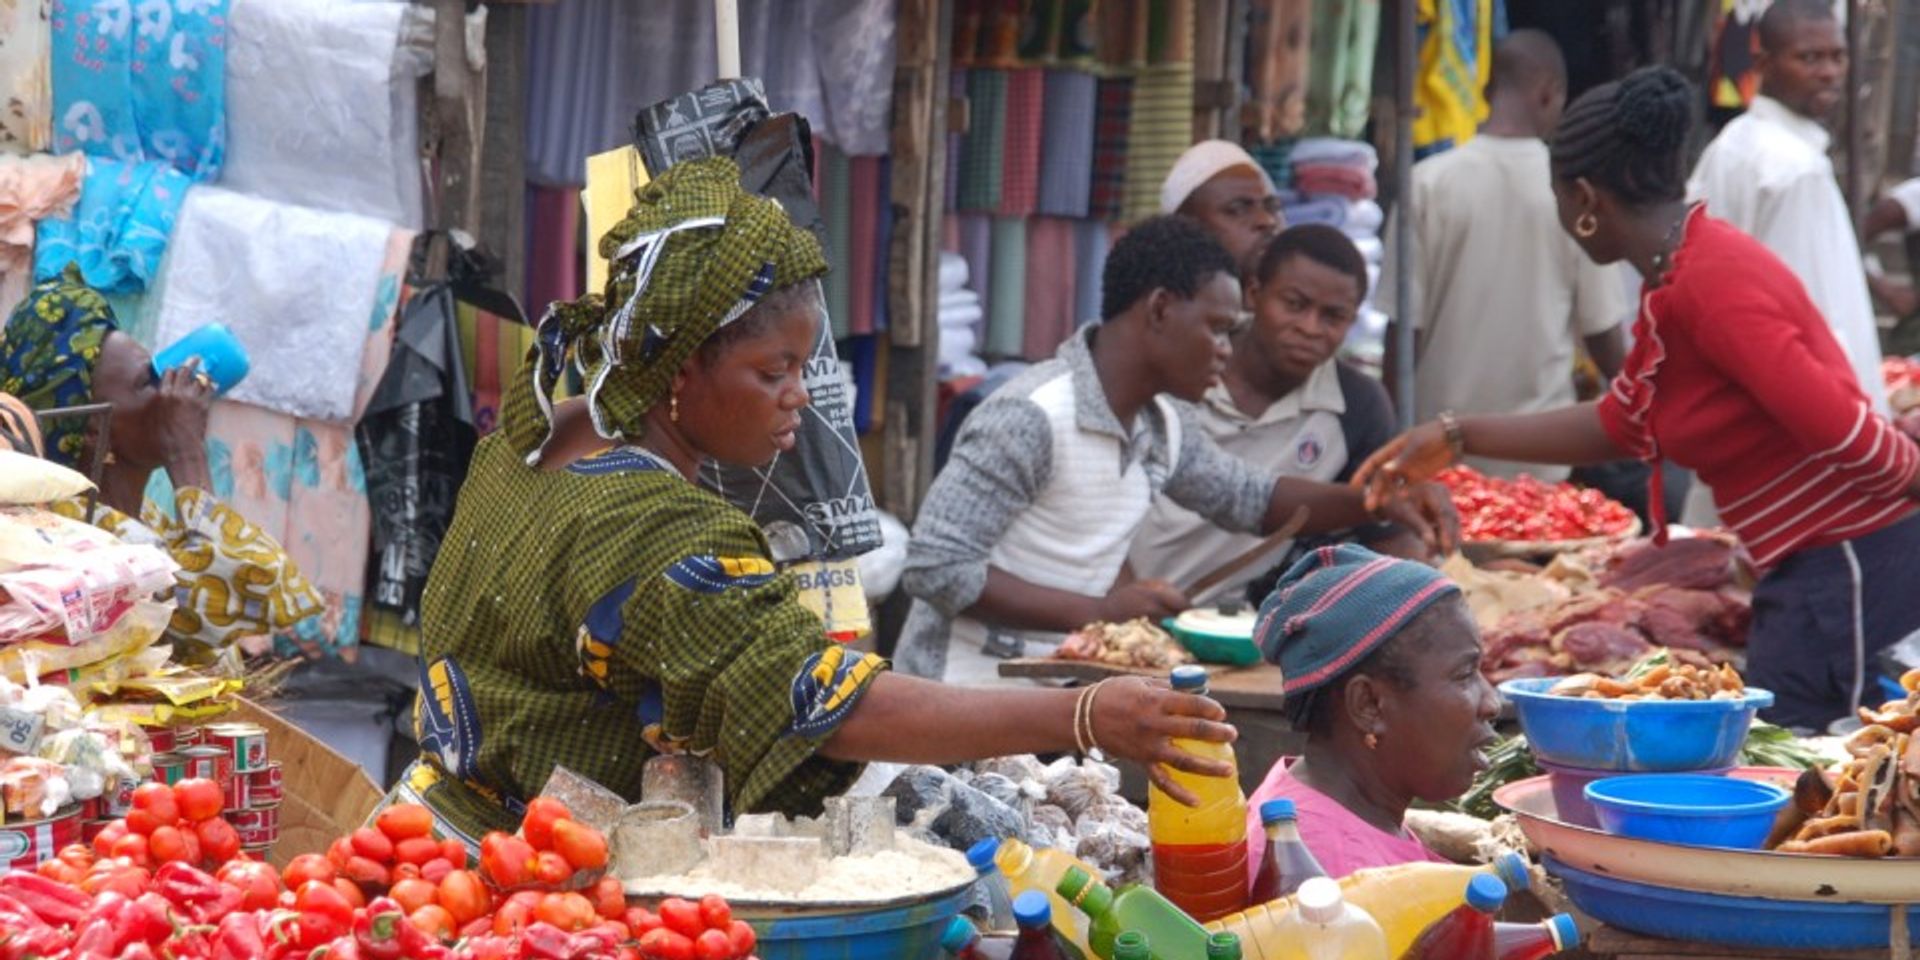 In un mercato in Africa una donna prende in mano una bottiglia per venderla.